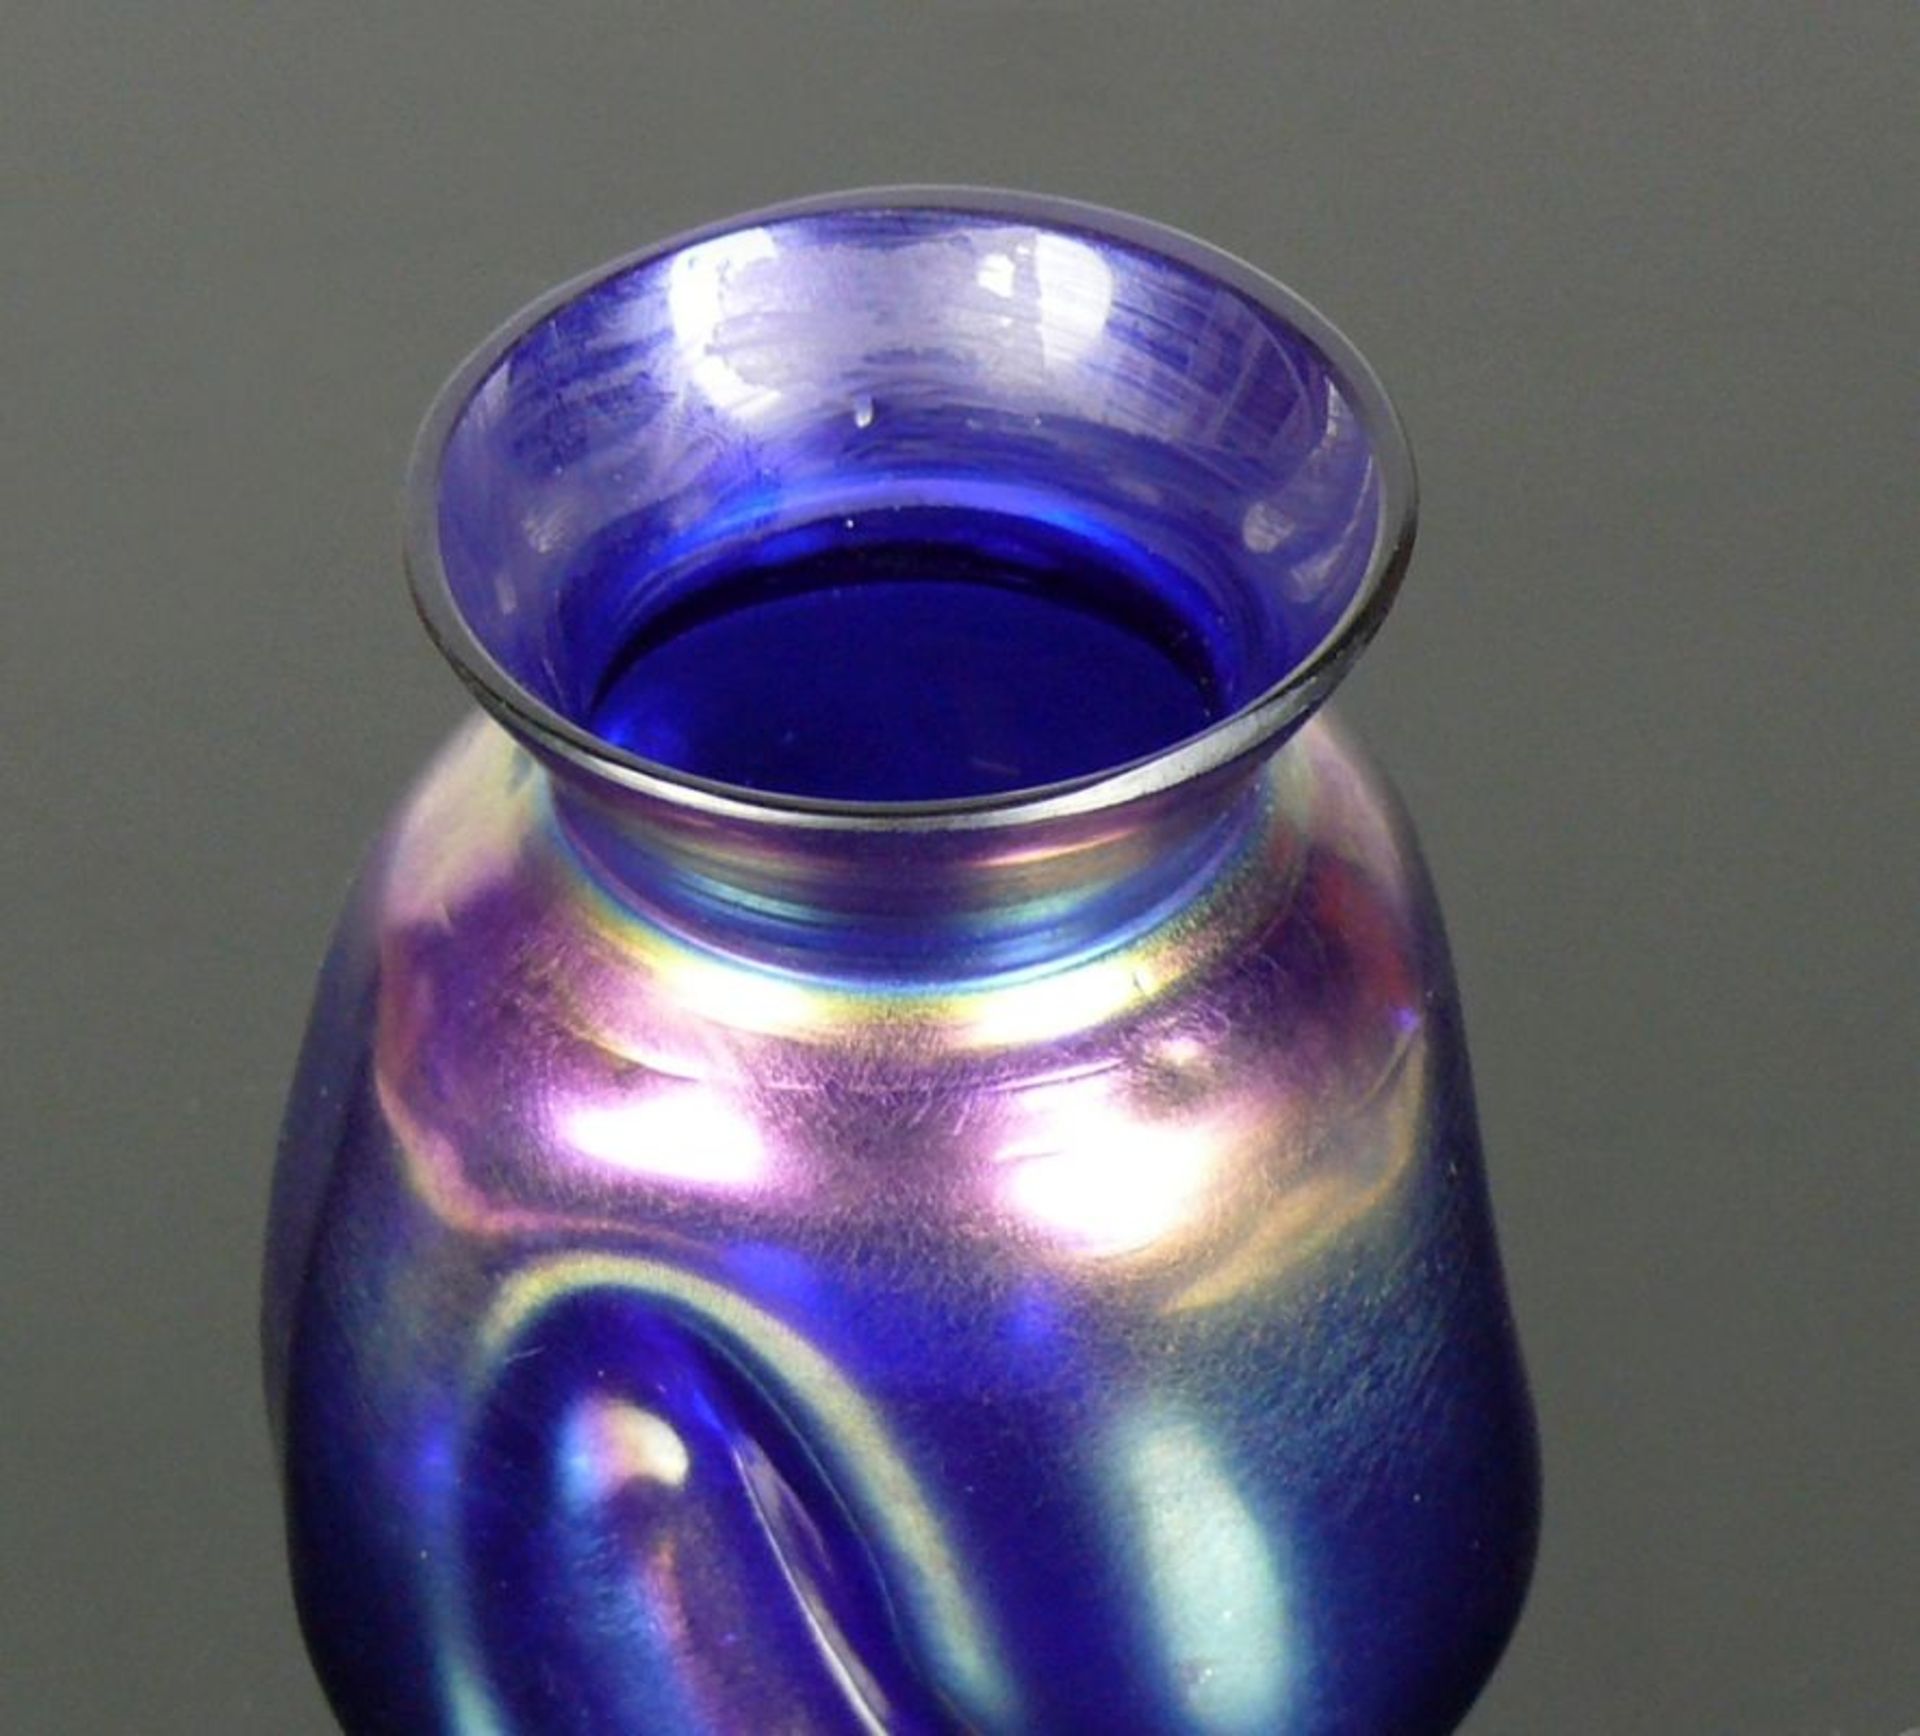 Vase (um 1900)Gefäßkörper mit 3 schräg vertikalen Eindellungen; blaues Glas gelb, silber, grün - Bild 2 aus 2